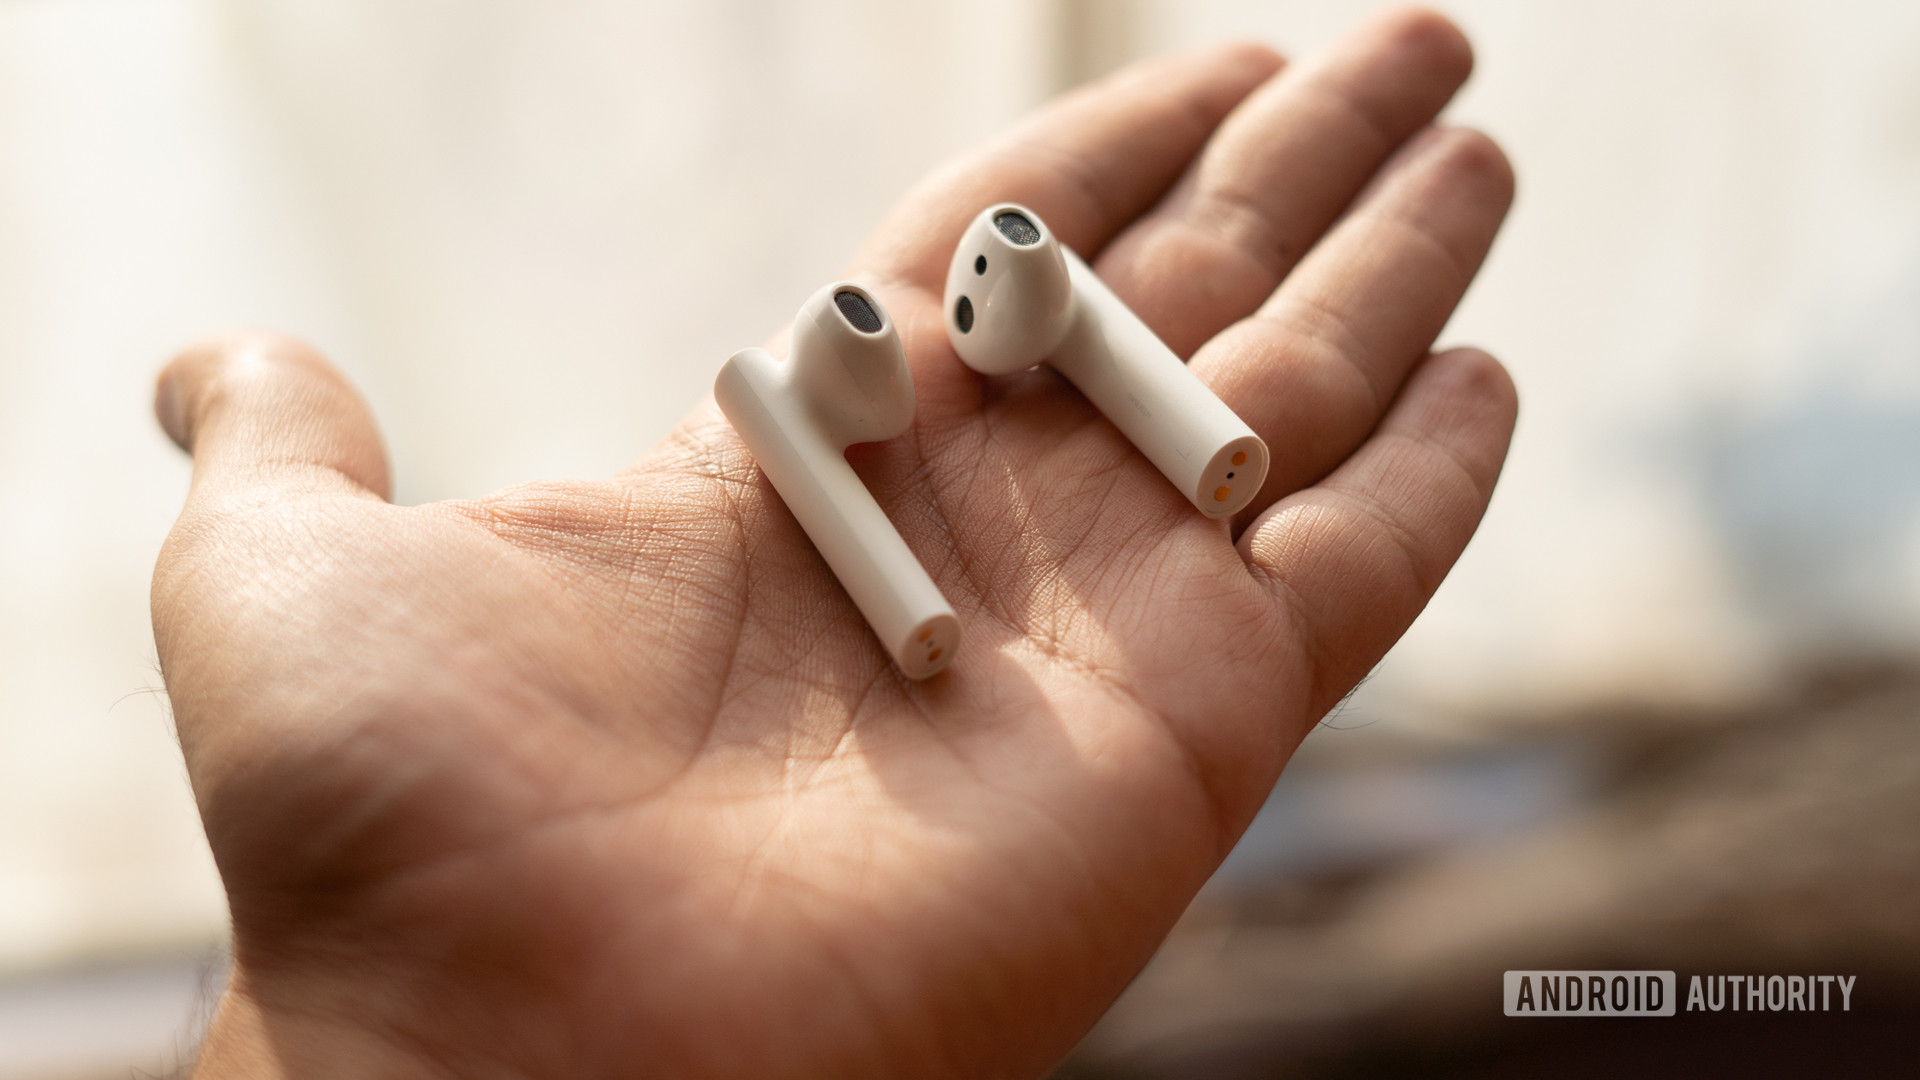 Image of Xiaomi True Wireless Earphones 2 earbuds in hand